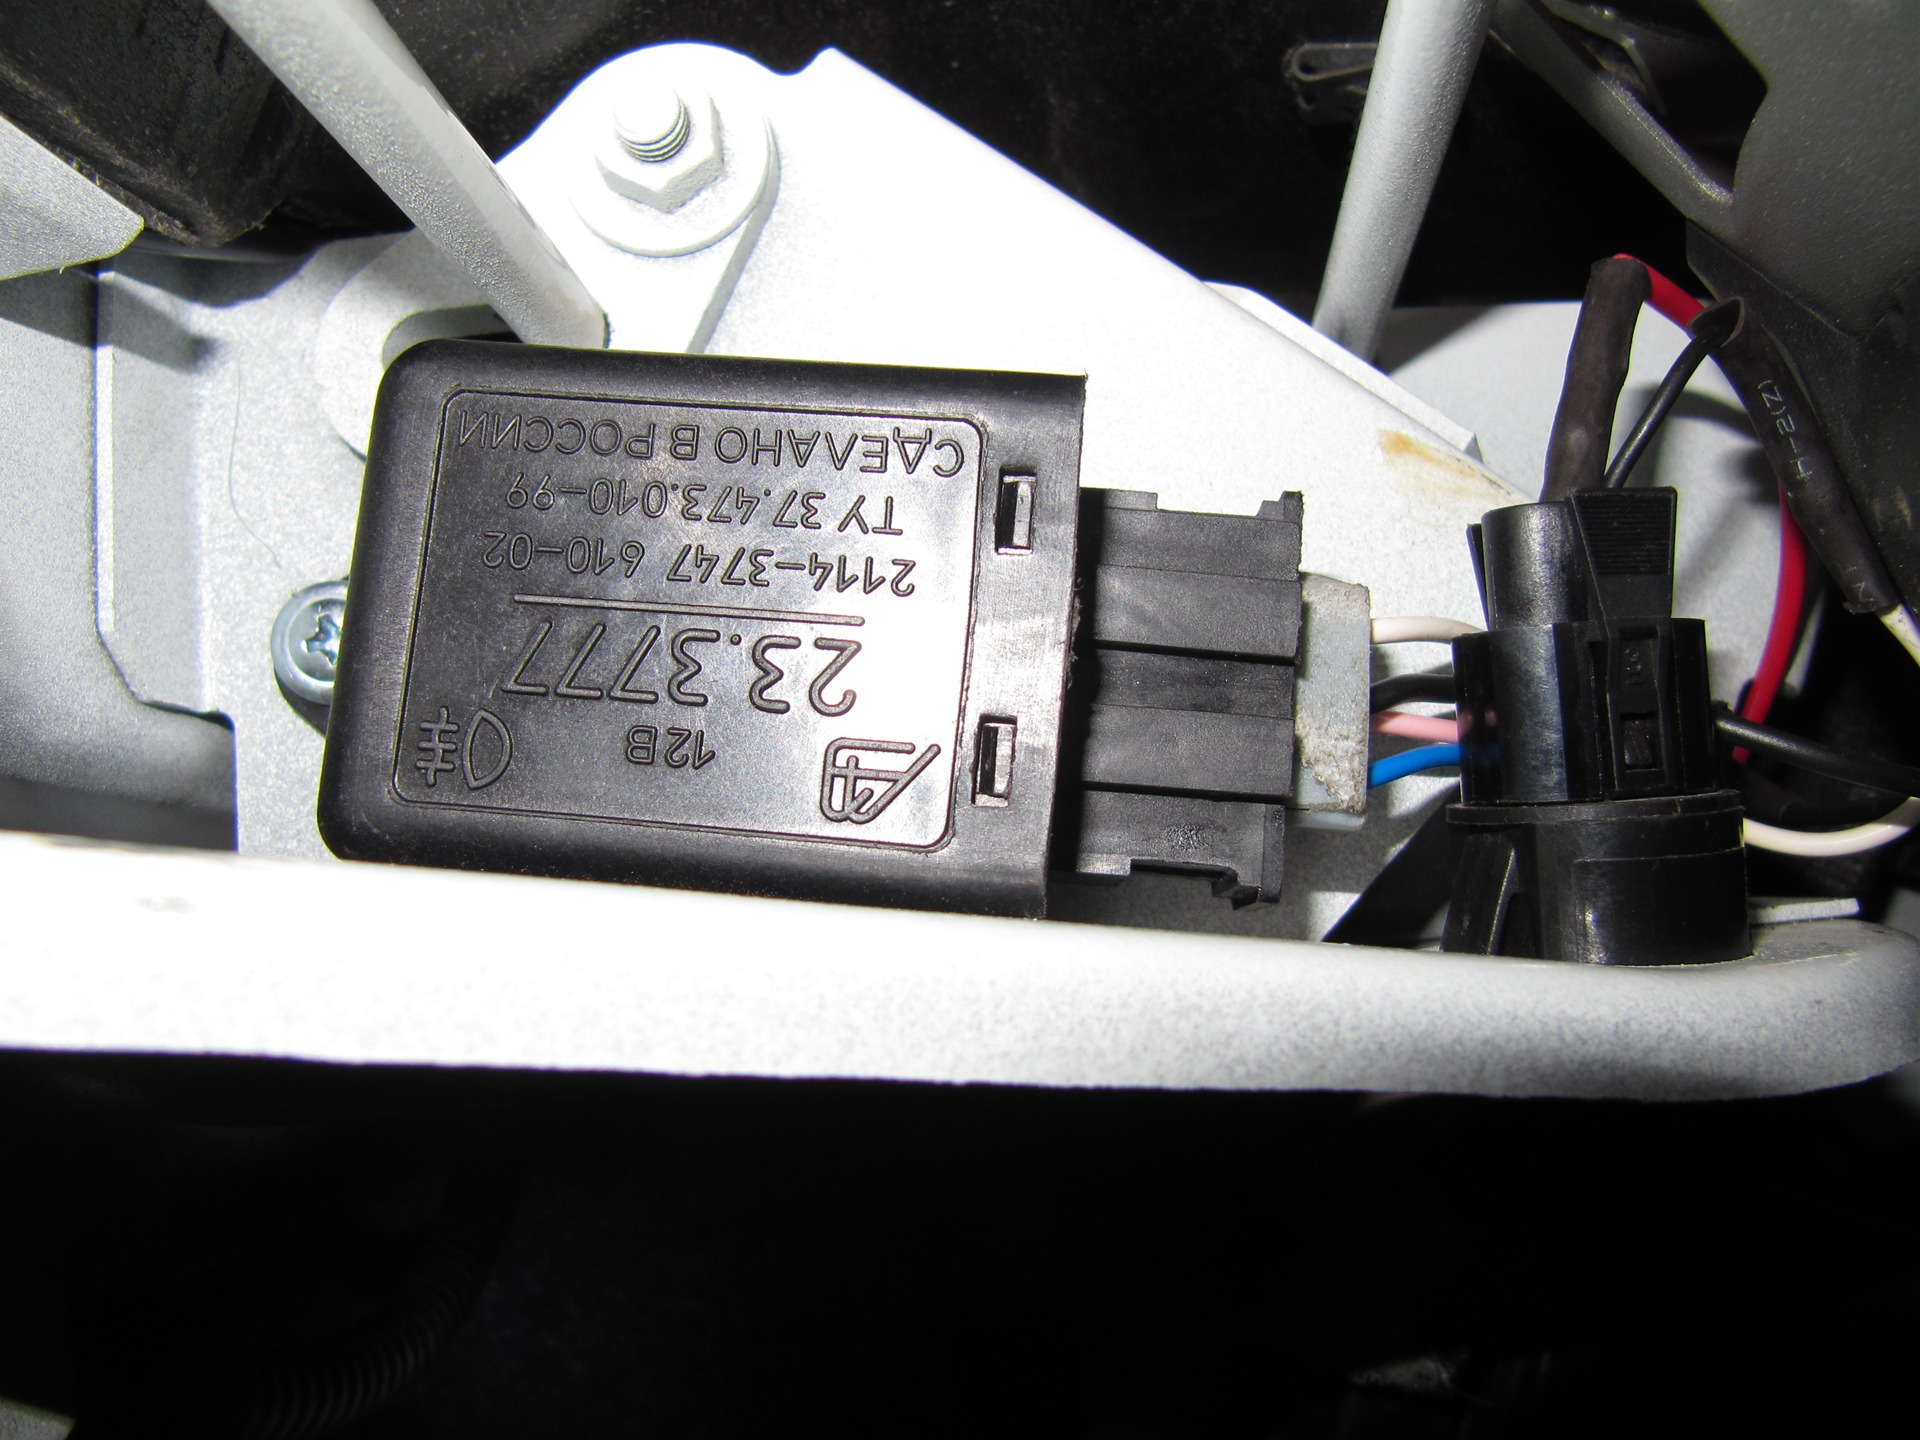 ВАЗ 2115 как работает свет в багажнике. При включении габаритов просаживается напряжение ВАЗ 2115. Реле зажигания 2115